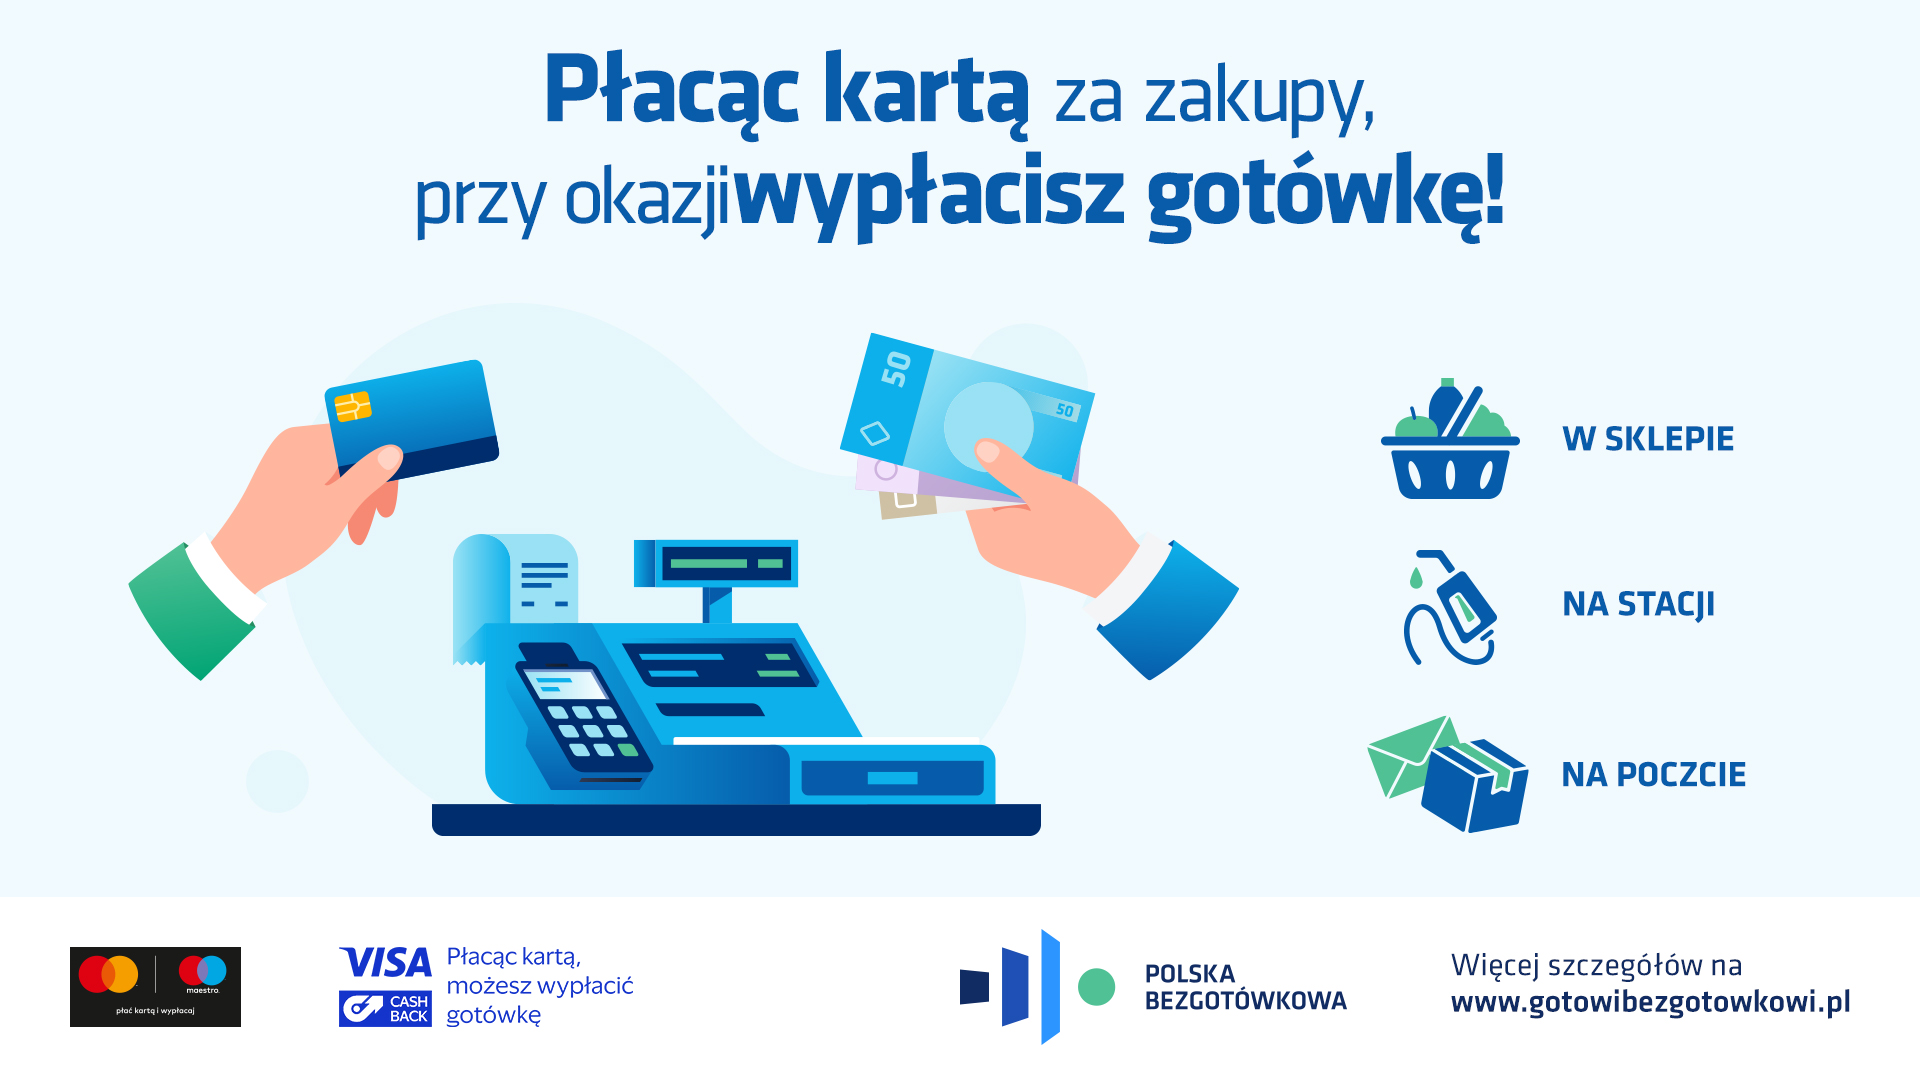 Fundacja Polska Bezgotówkowa promuje dodatkowe funkcje terminali płatniczych